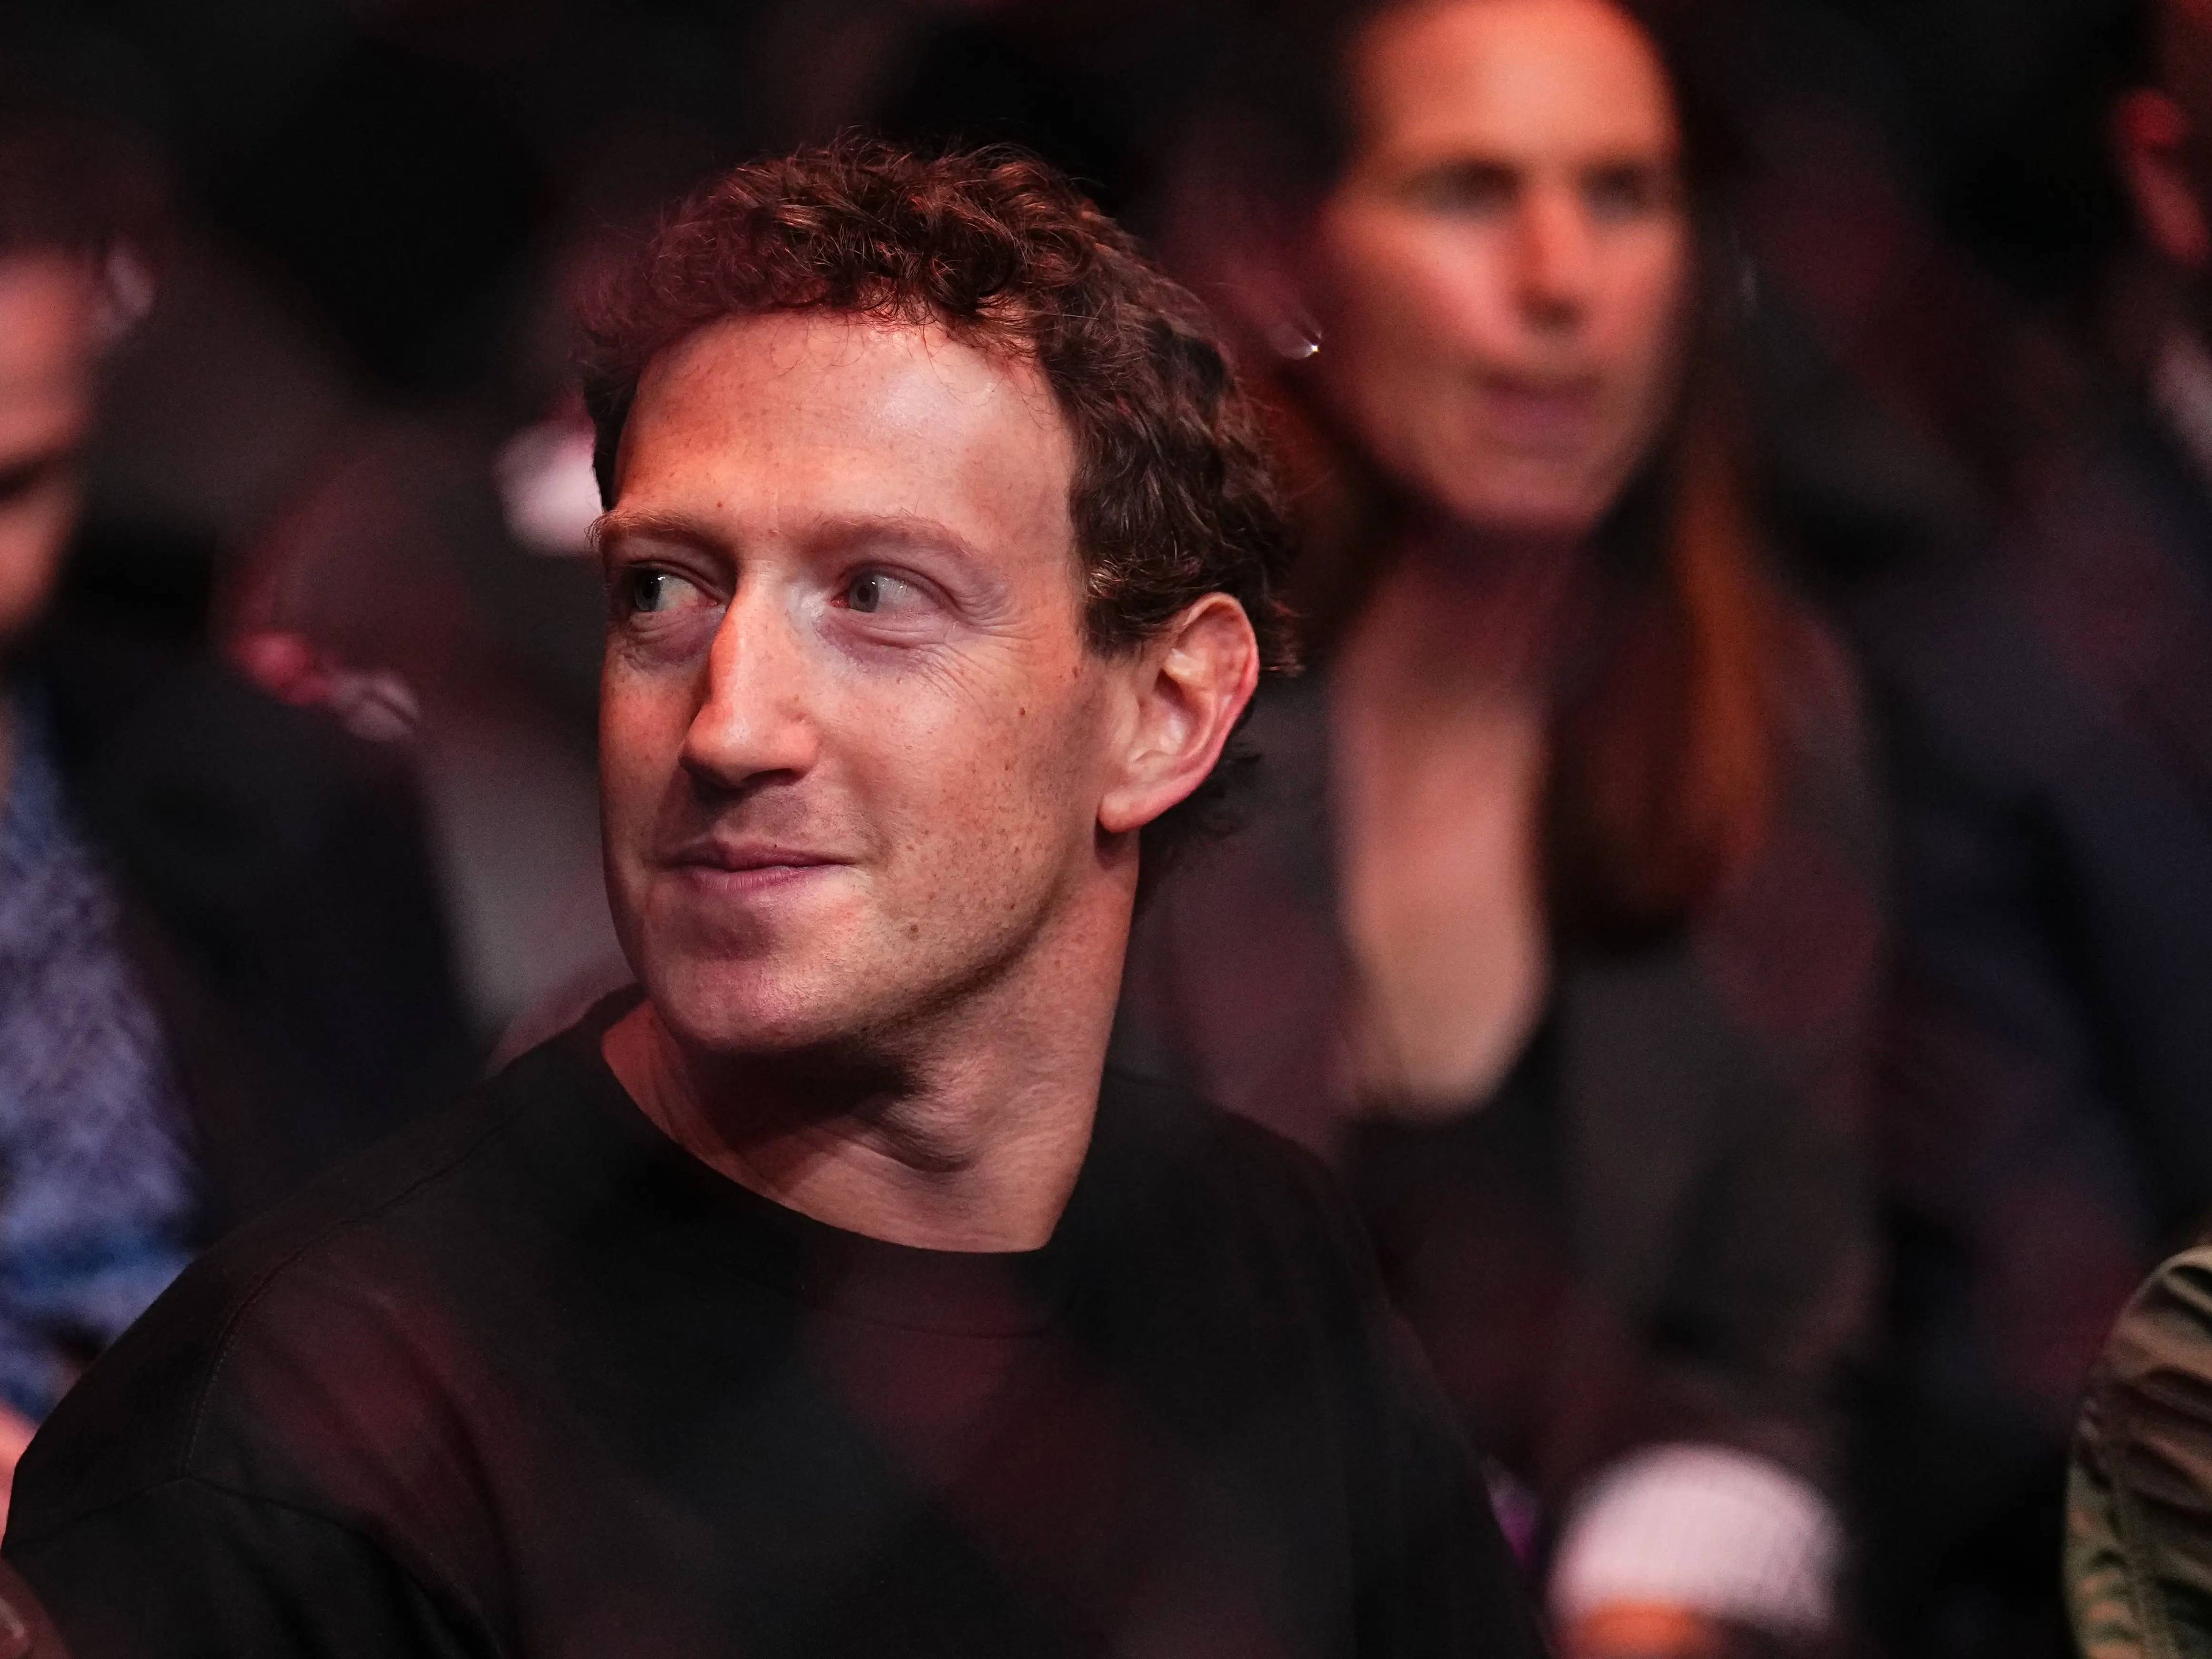 El Consejero Delegado de Meta, Mark Zuckerberg, dijo en una entrevista a Bloomberg publicada el miércoles que lo más importante es "aprender a pensar de forma crítica."